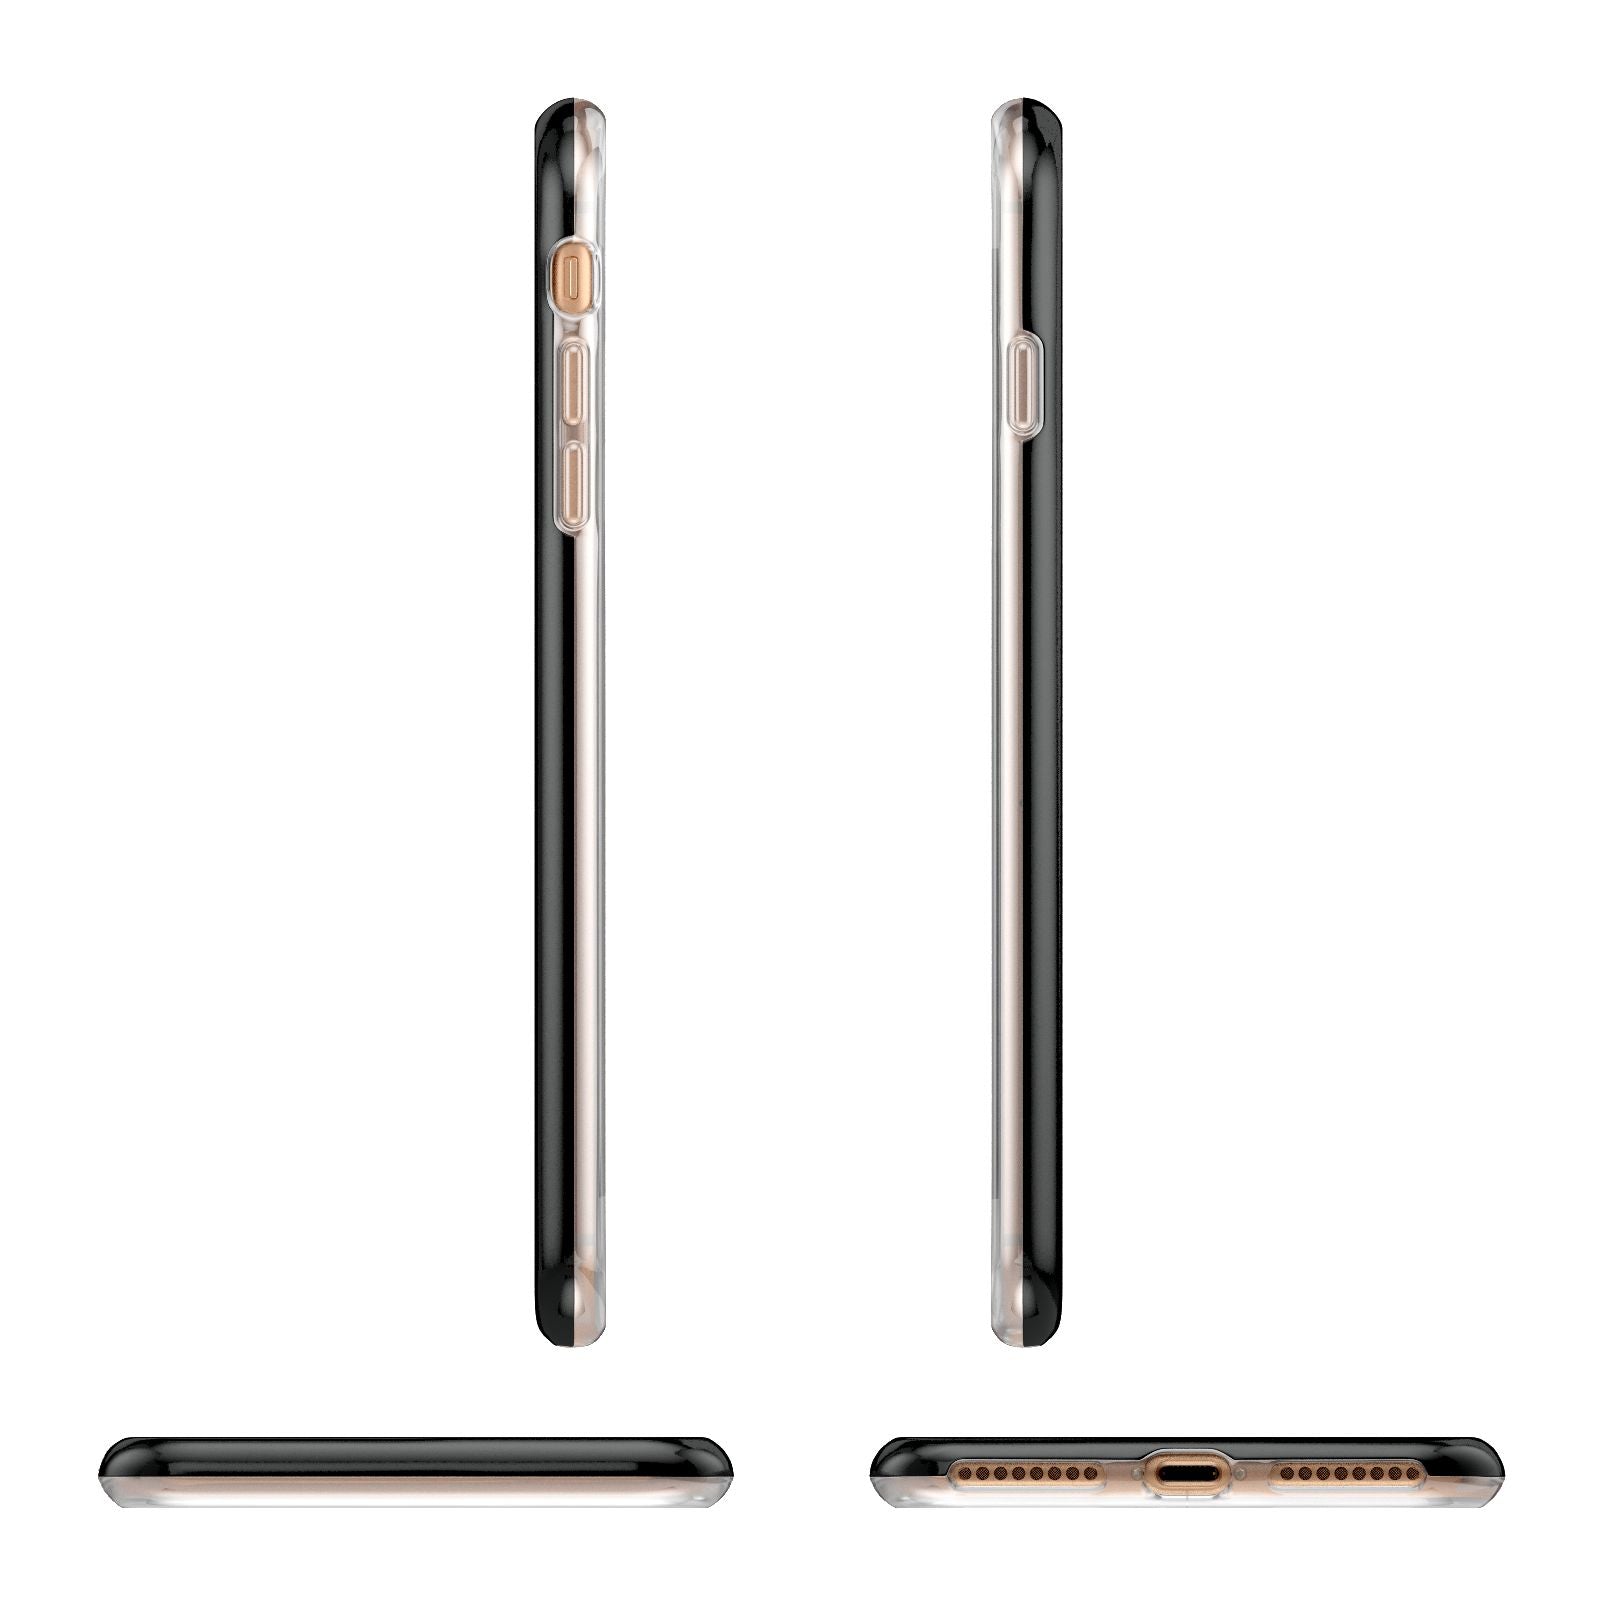 Mr Apple iPhone 7 8 Plus 3D Wrap Tough Case Alternative Image Angles